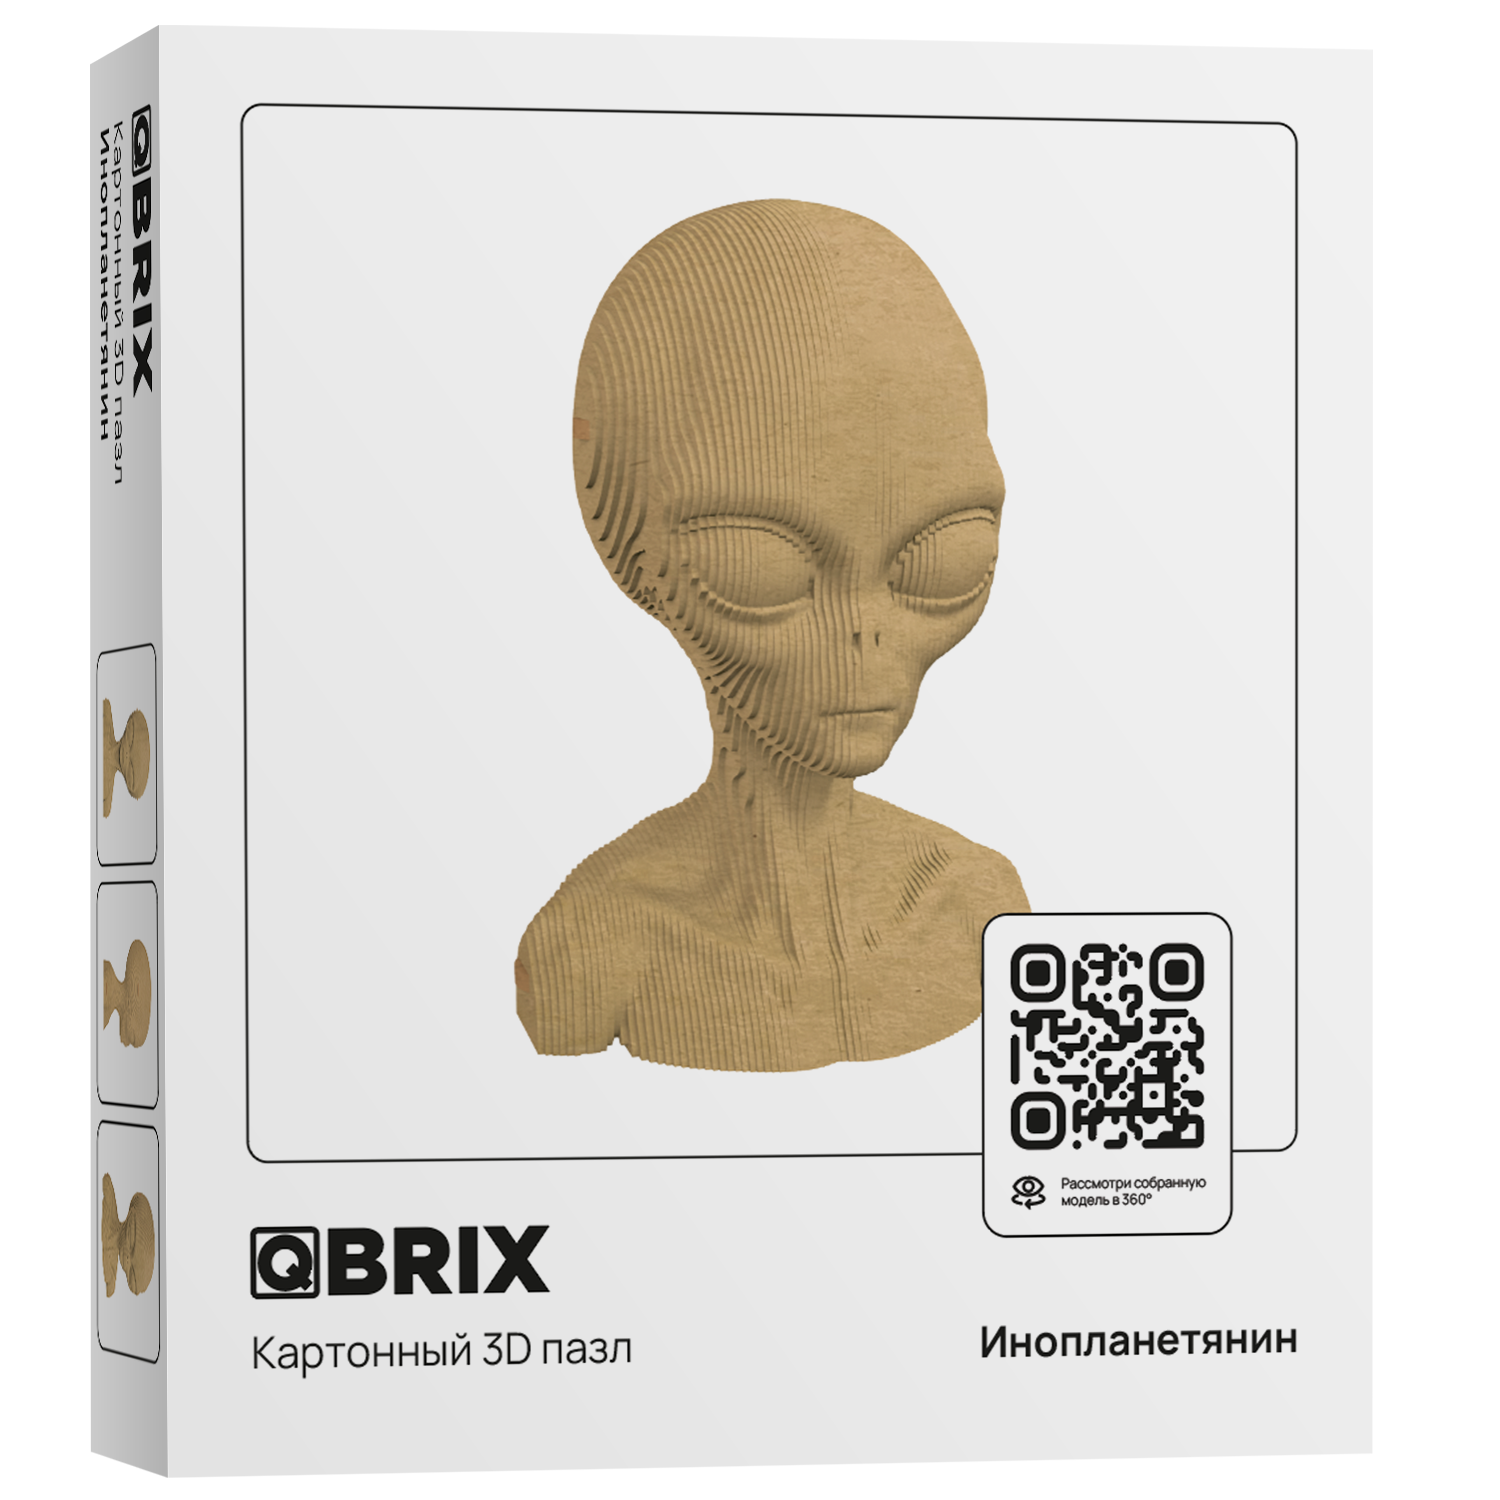 Конструктор QBRIX 3D картонный Инопланетянин 20024 20024 - фото 1